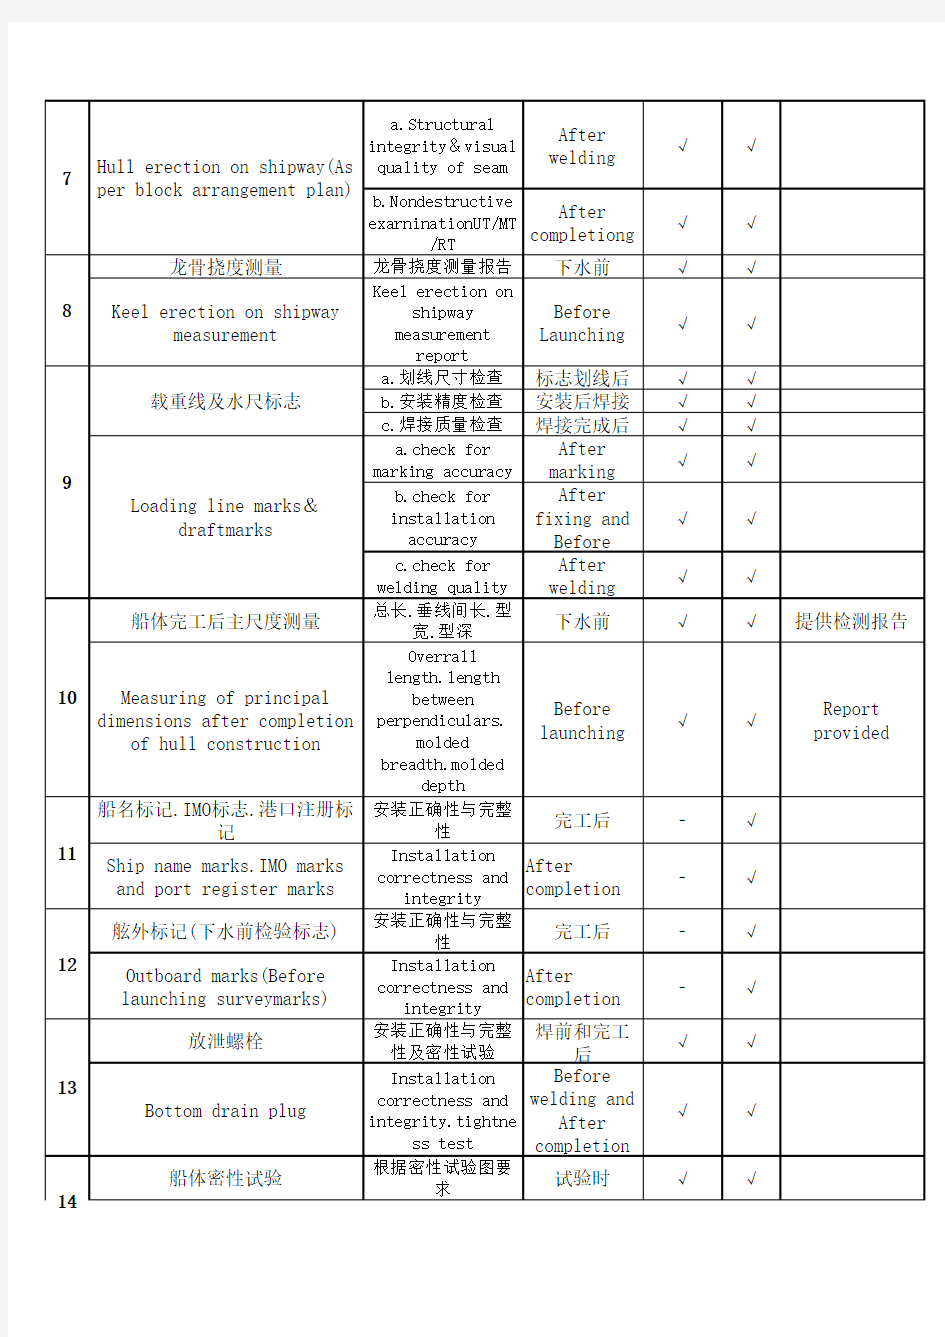 船舶质检报验项目表(中英详细版)